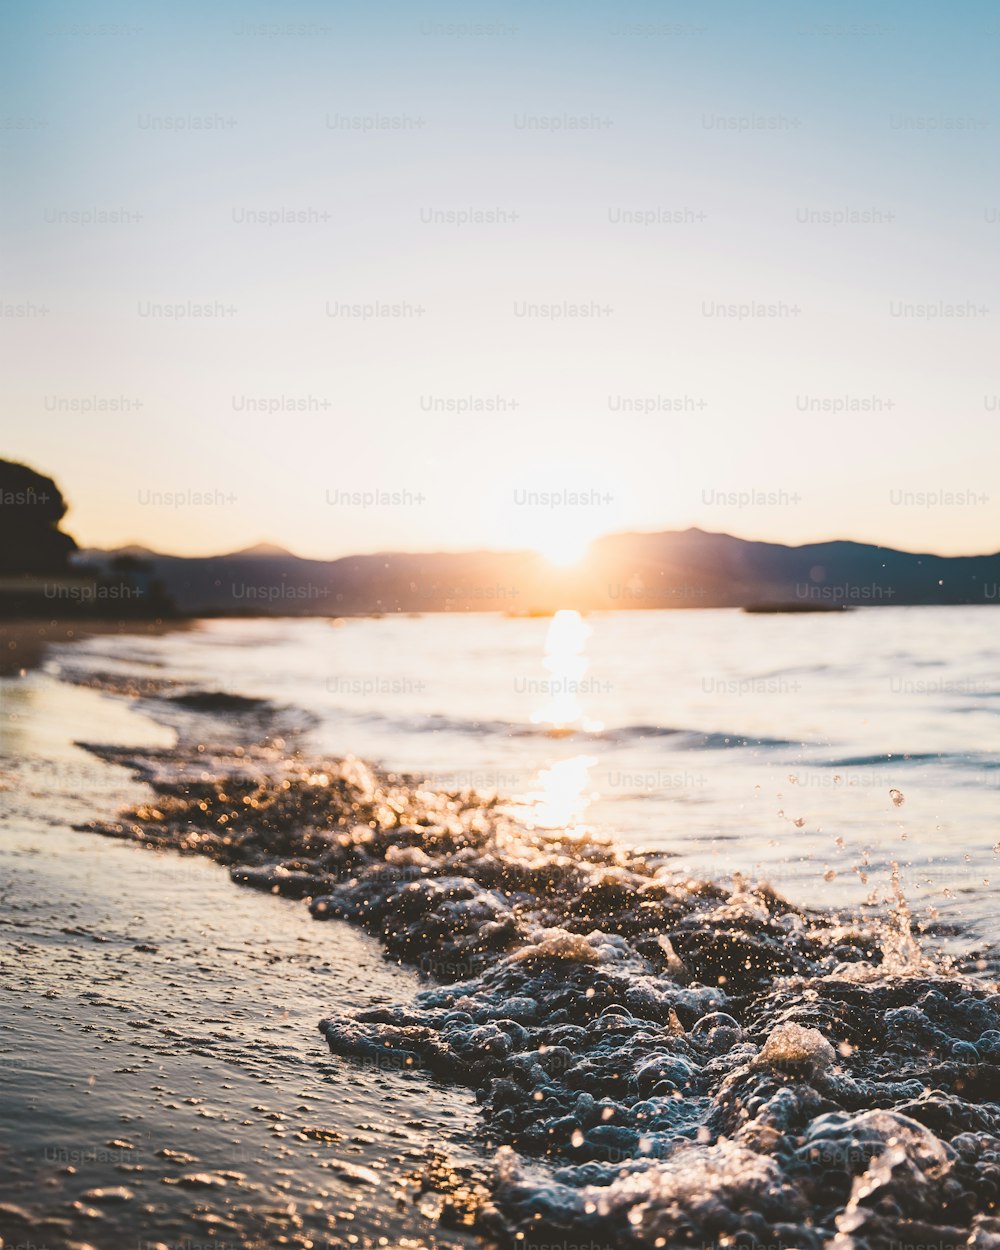 beach sunset wallpaper iphone